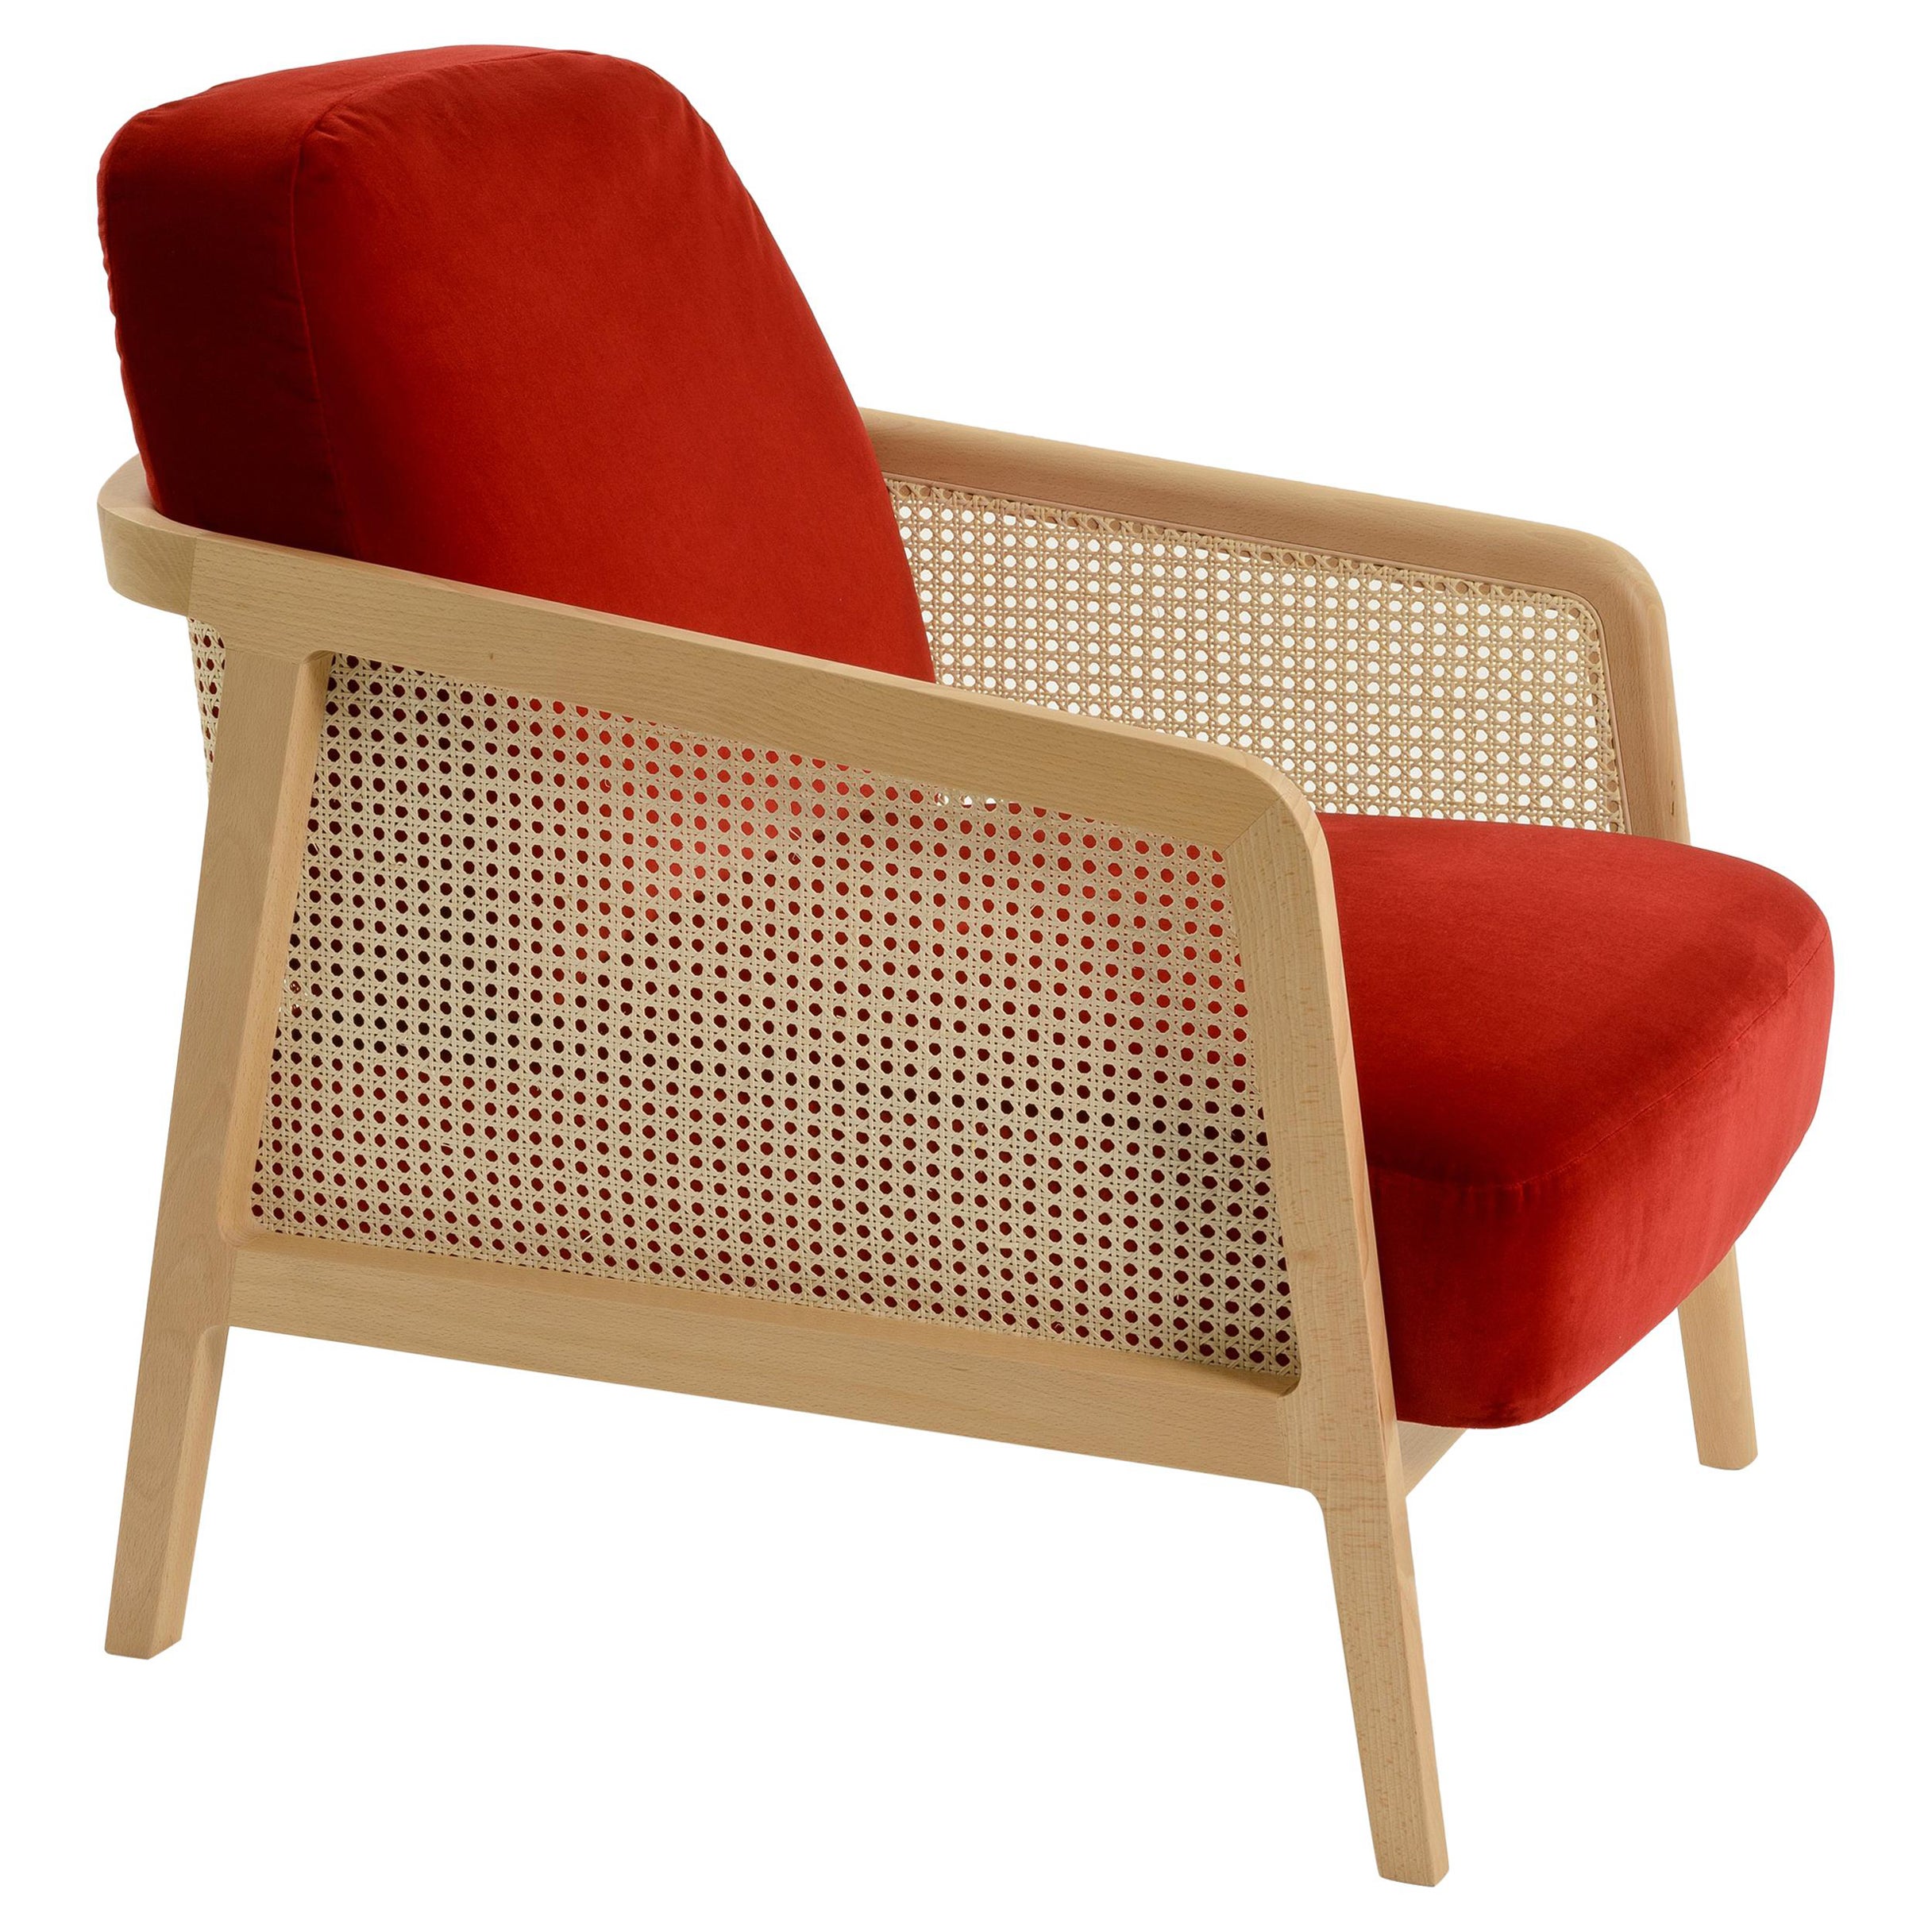 Ein Set aus zwei Sesseln aus Holz und Stroh, das an die exklusive Clubatmosphäre erinnert, aber in einer zeitgenössischen Tonart. Vienna ist ein außerordentlich komfortabler und eleganter Sessel für das Wohnzimmer, entworfen von Emmanuel Gallina,